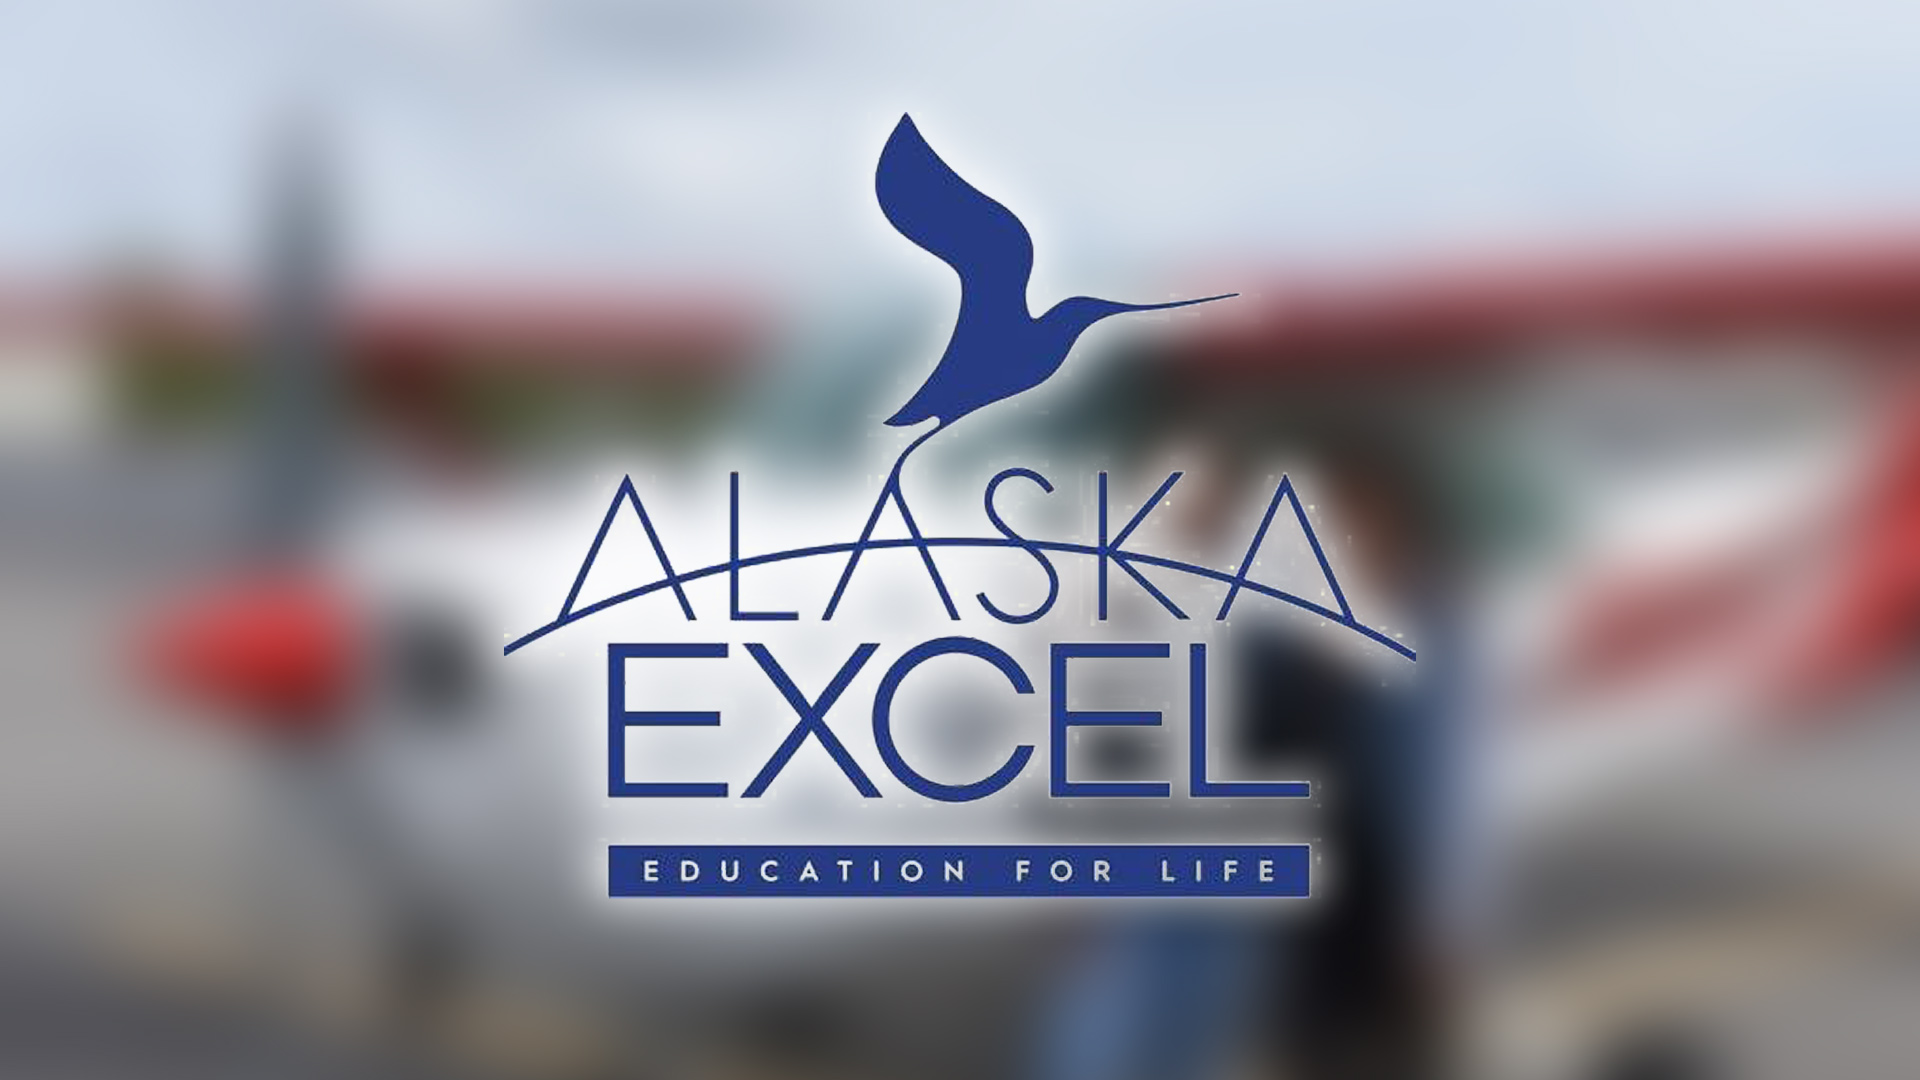 Alaska Excel